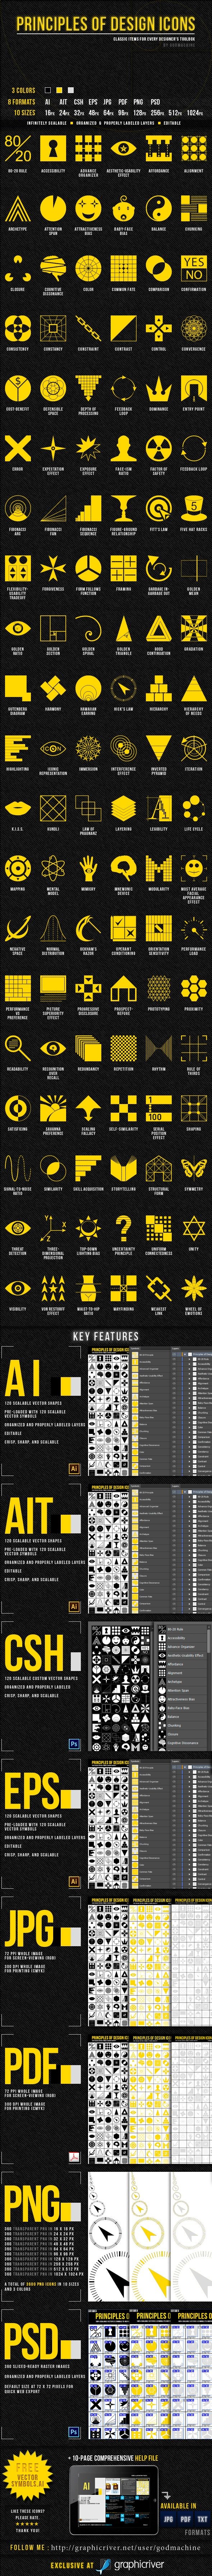 Principles of Design Icons by Jae Aquino, via Beha...